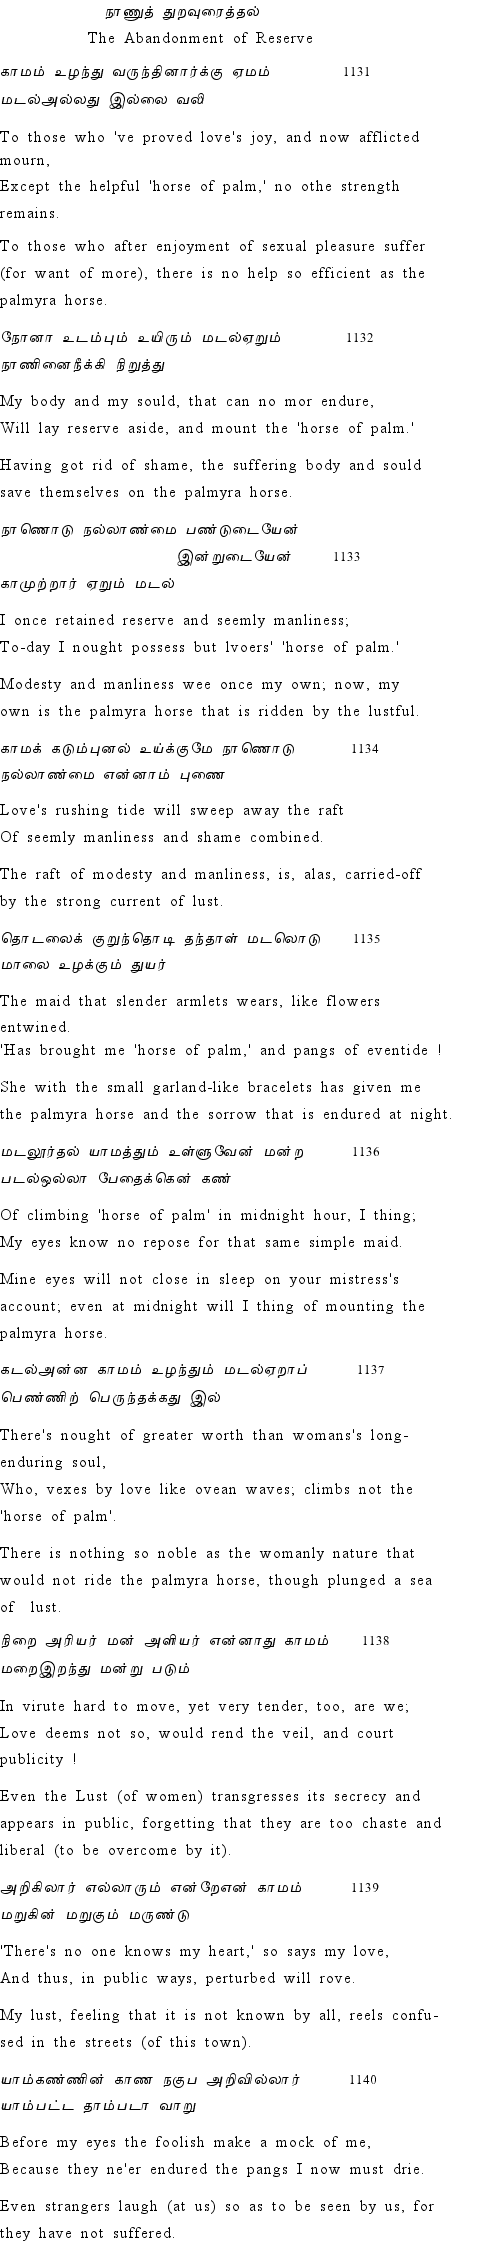 Text of Adhikaram 114